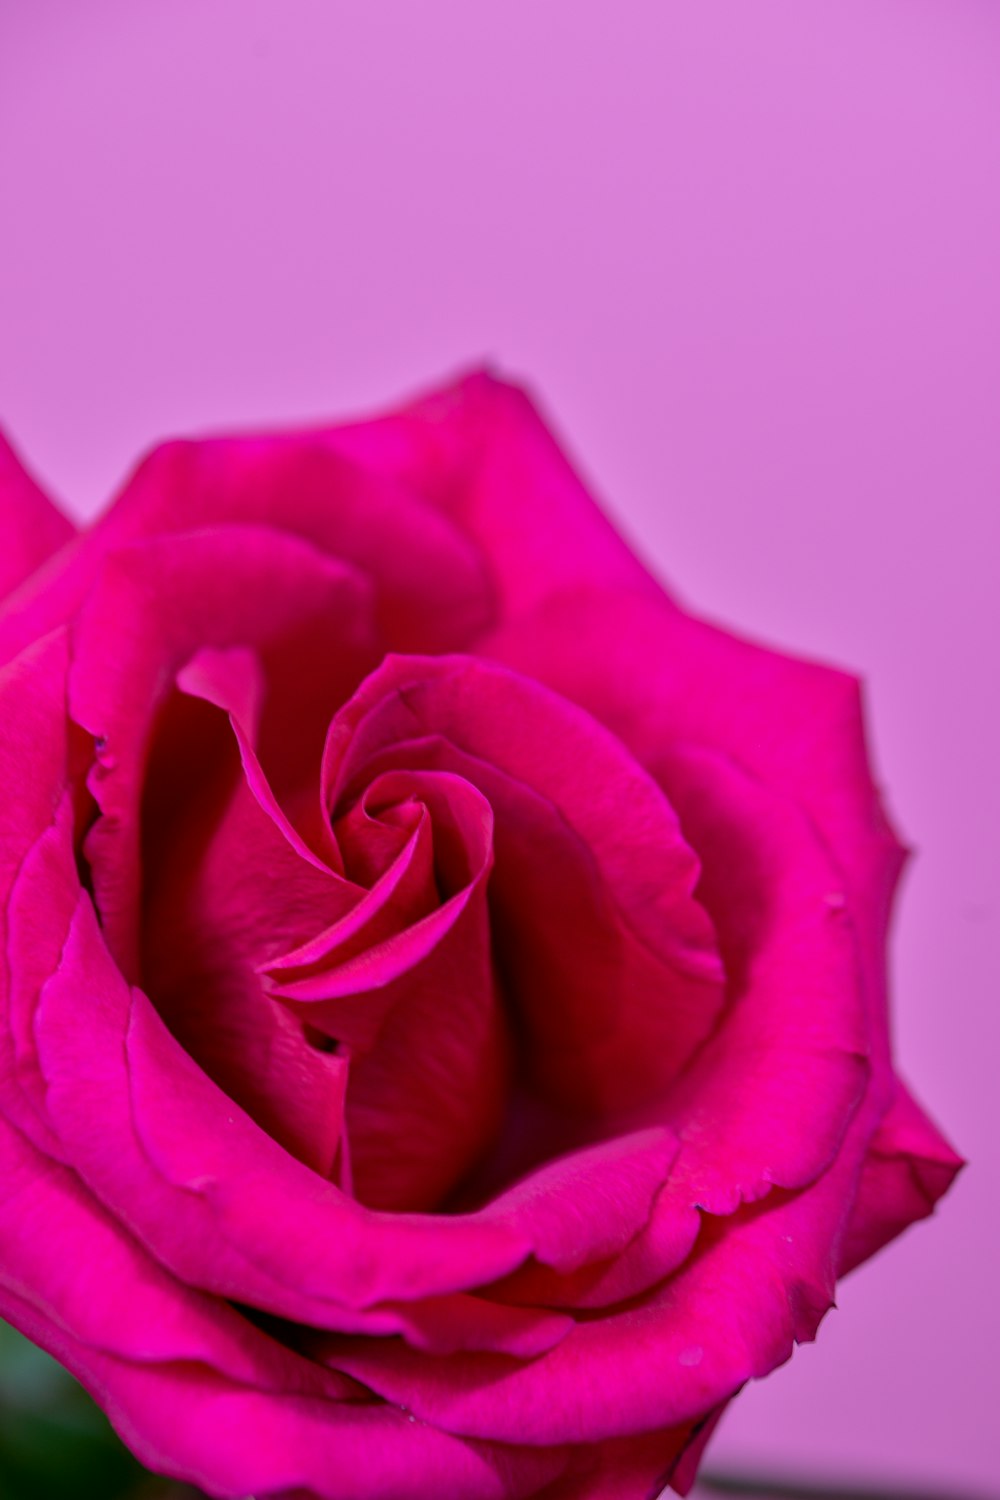 クローズアップ写真でピンクのバラの写真 Unsplashで見つけるピンクの無料写真